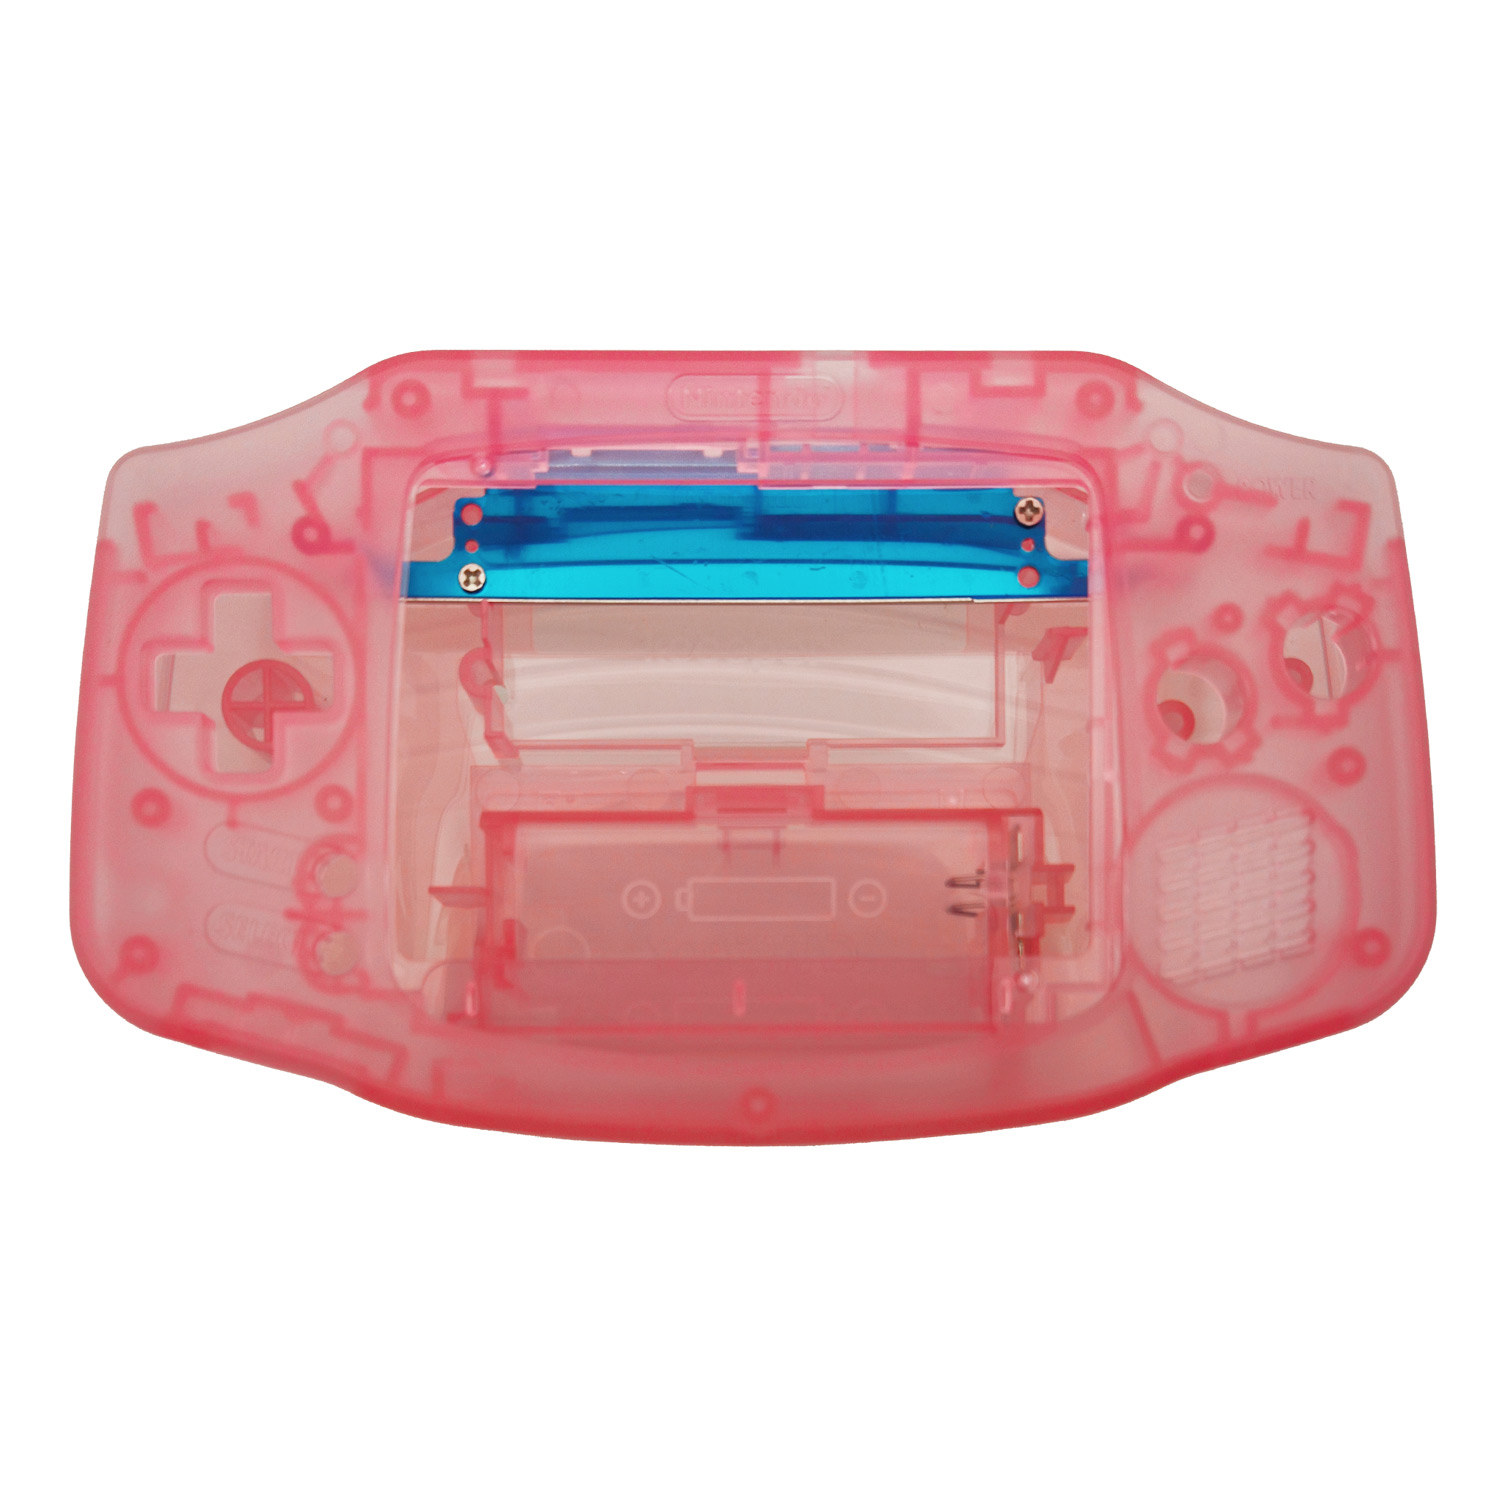 Gehäuse (Pink Transparent) für Game Boy Advance